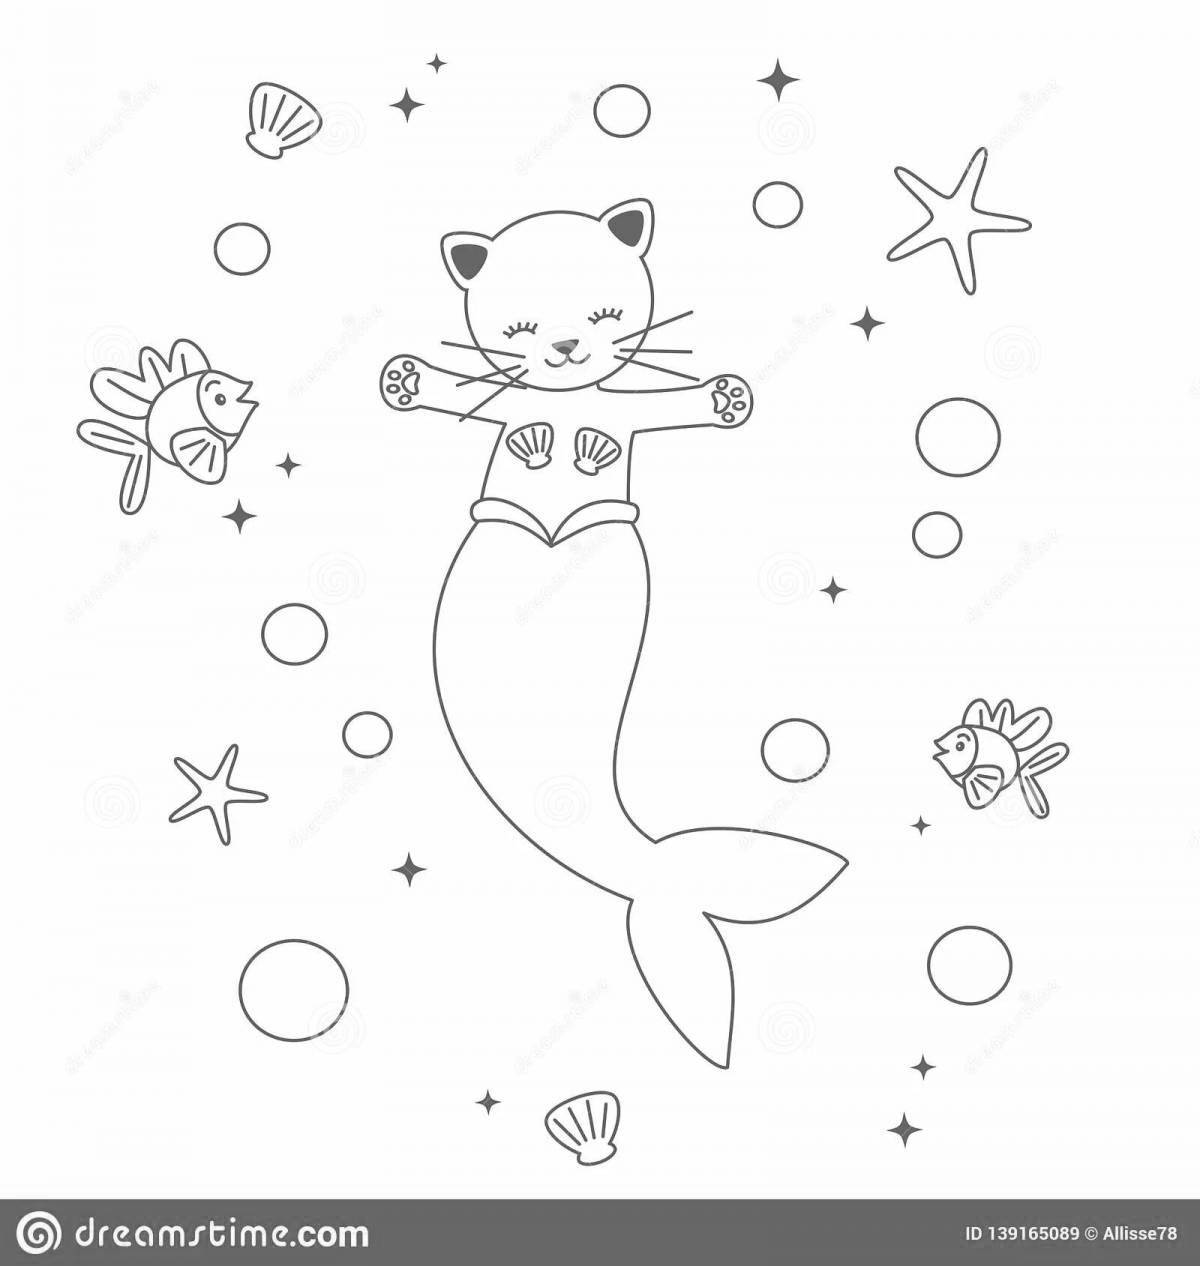 Fun coloring mermaid cat